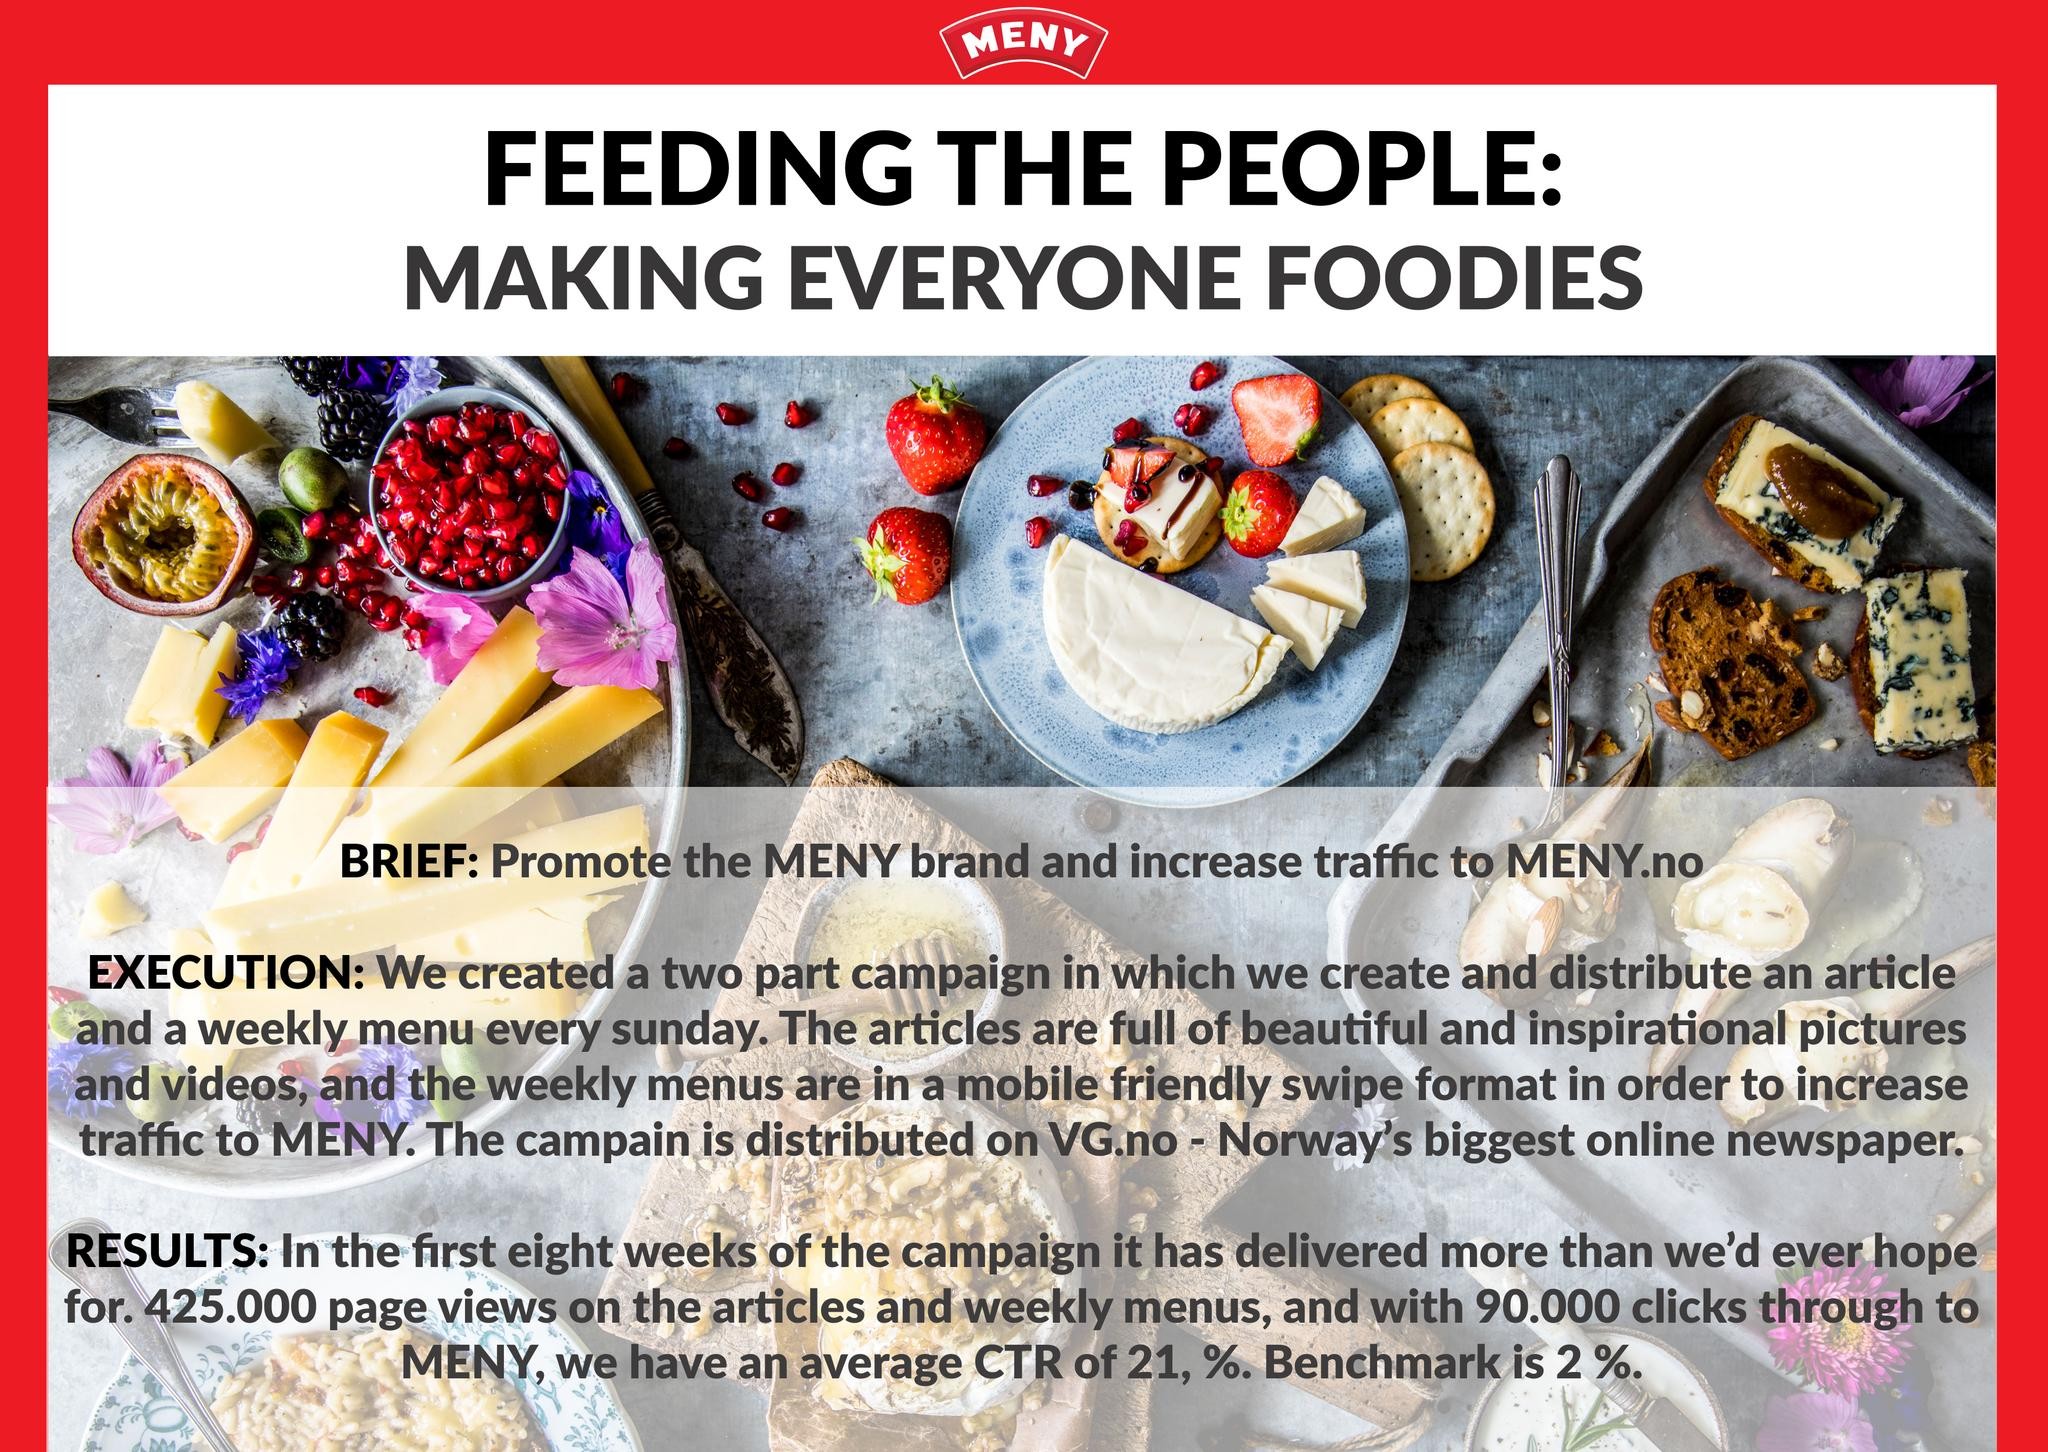 Feeding the people: Making everyone foodies